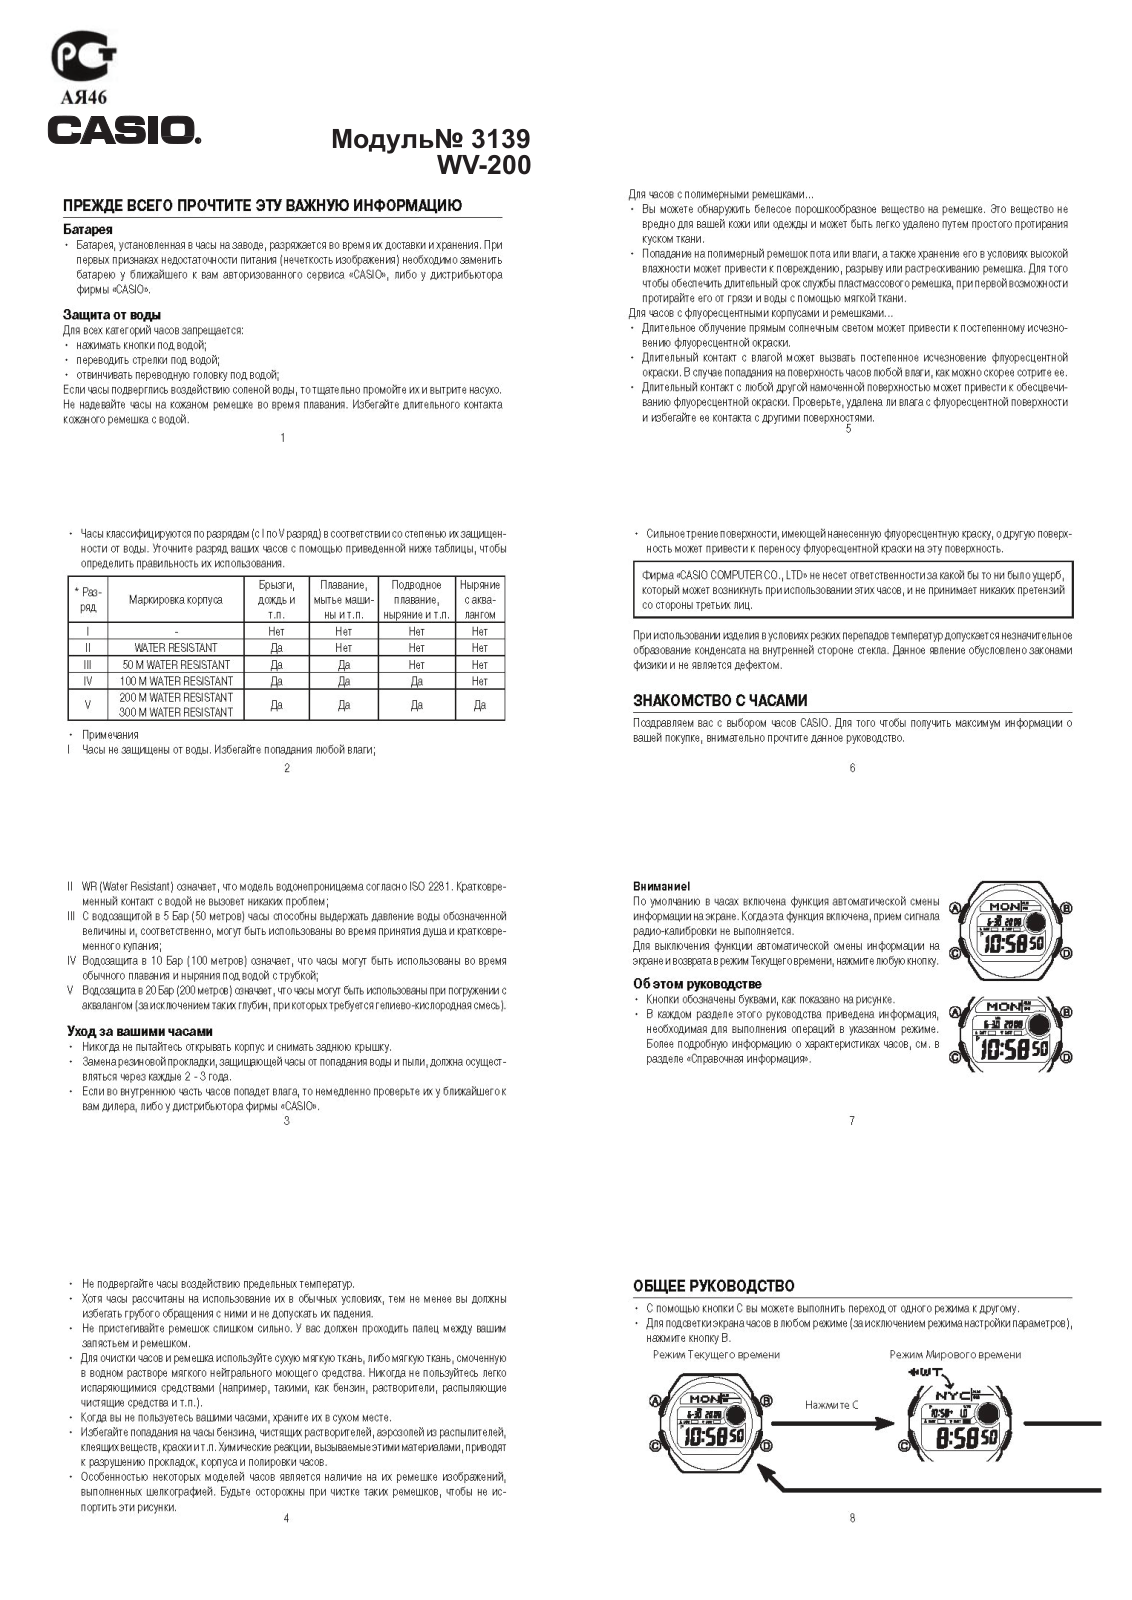 Casio WV-M60-1A User Manual